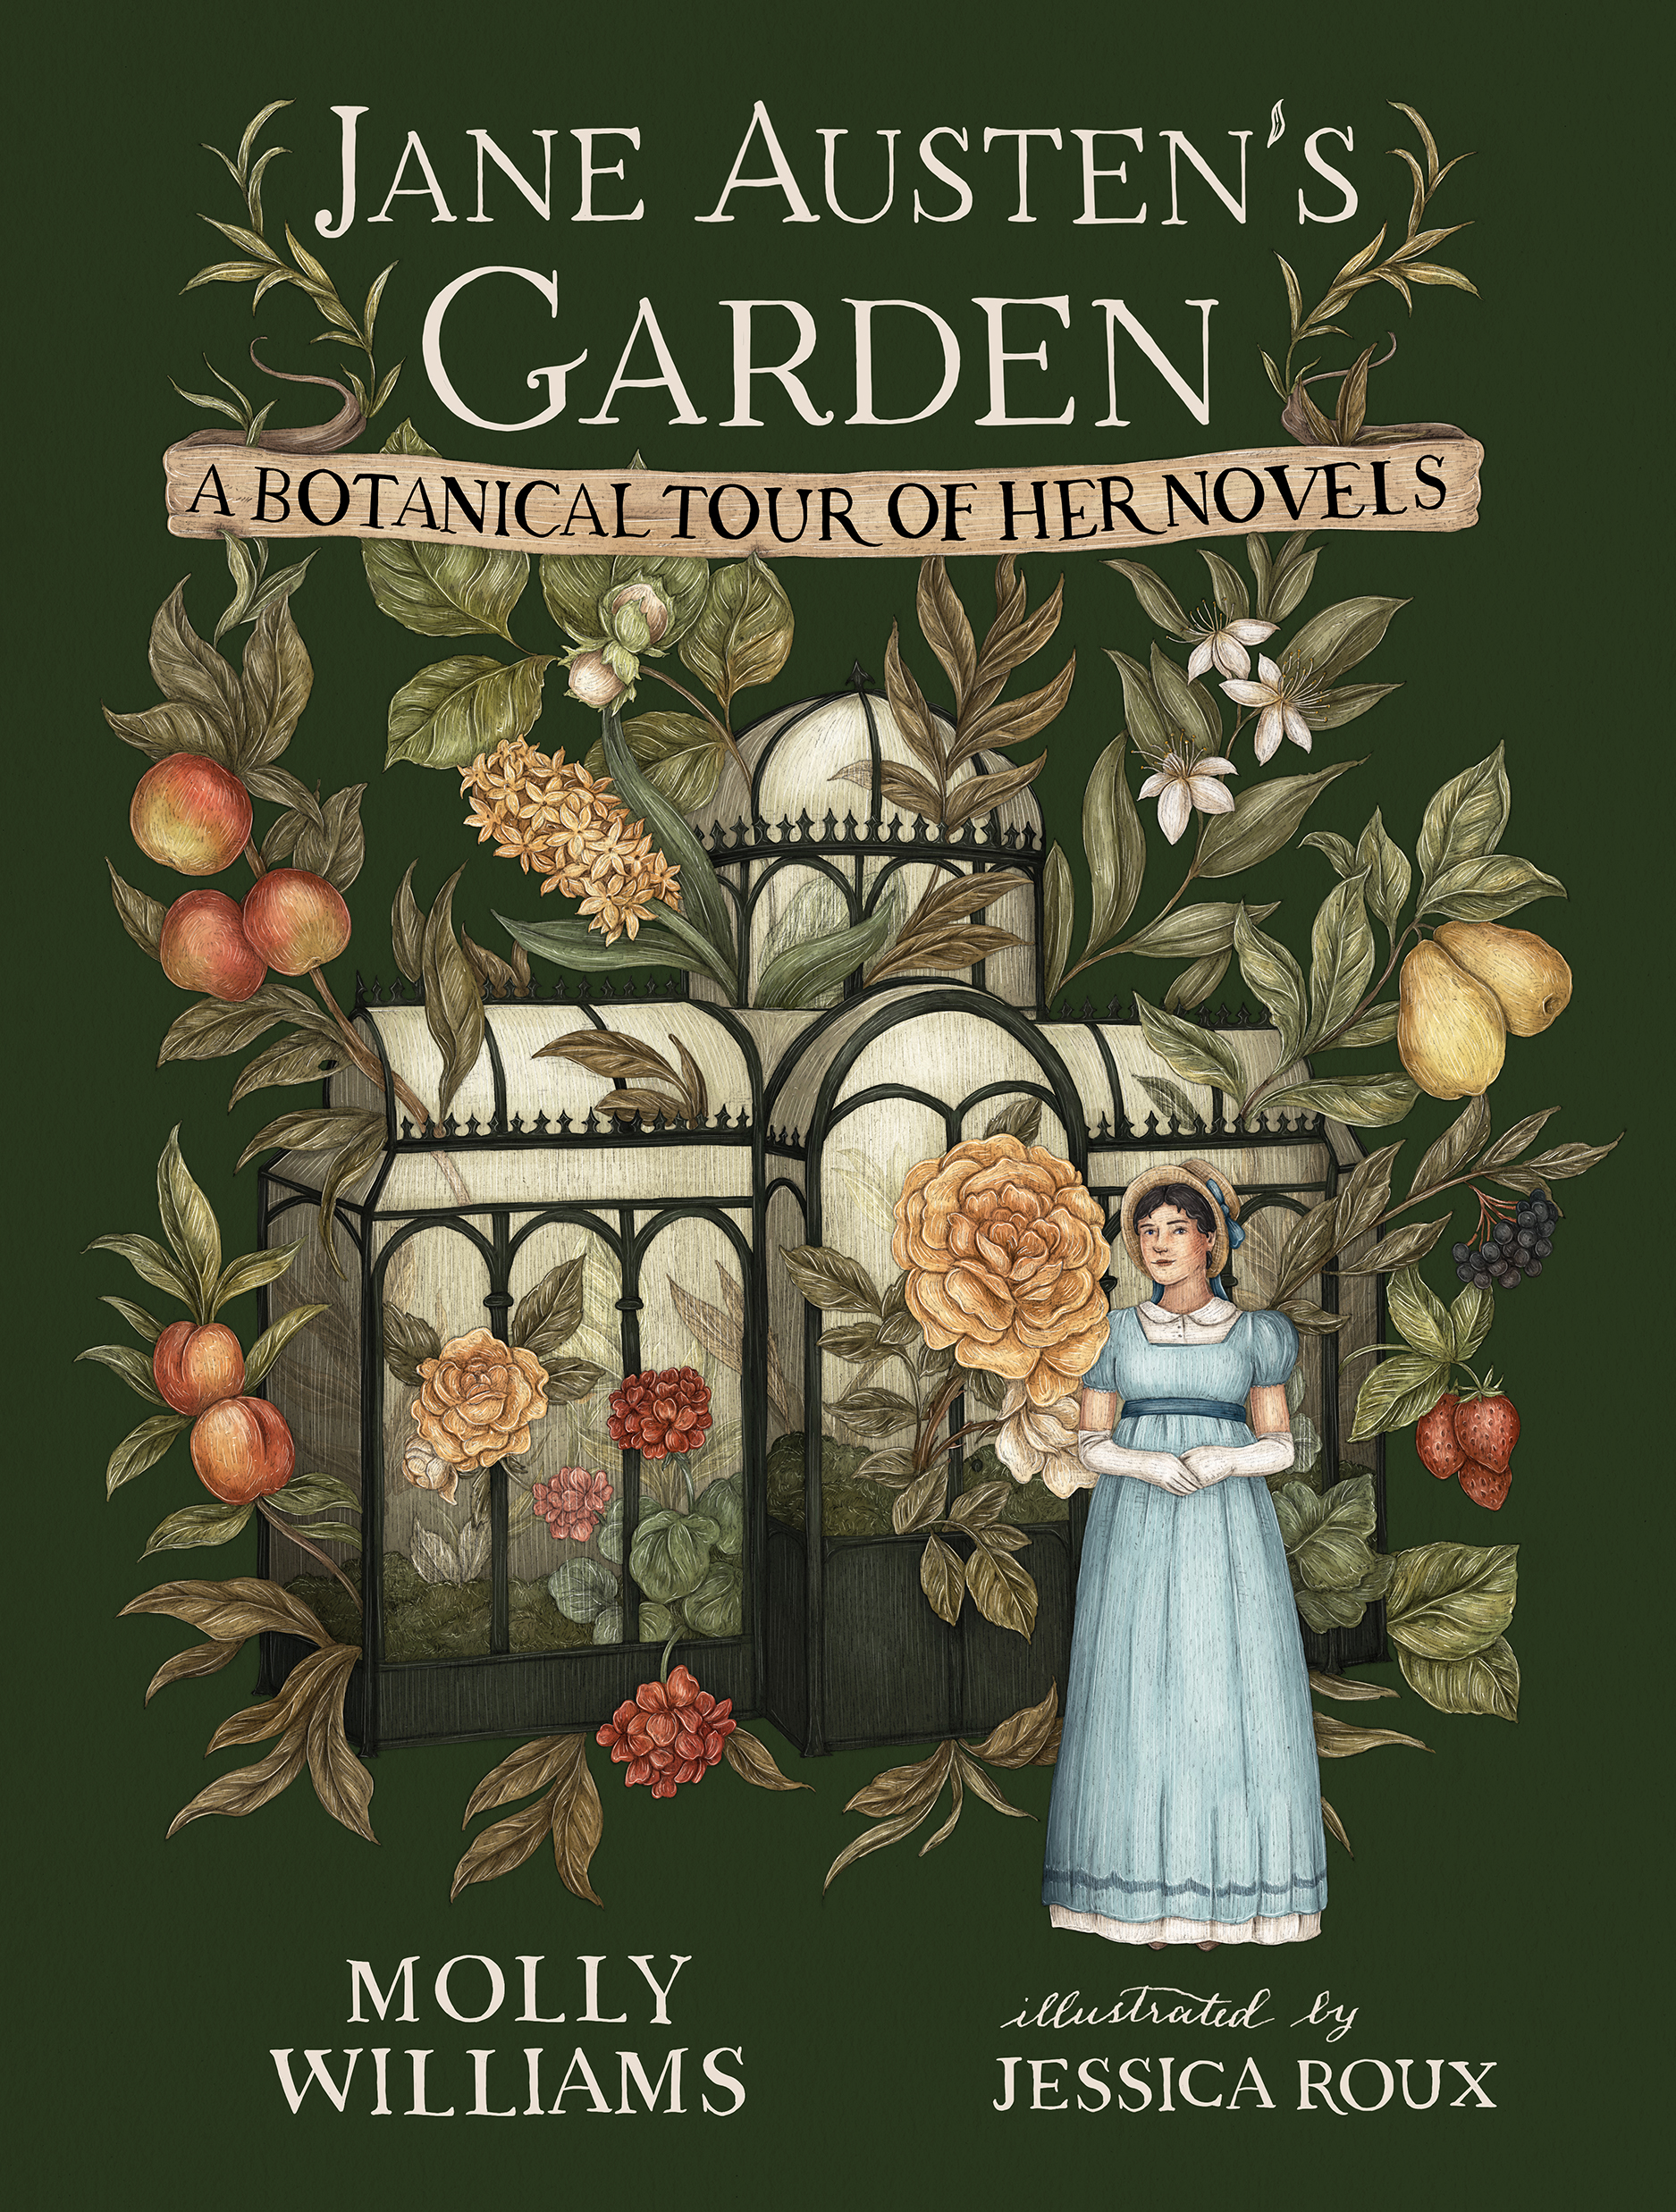 Jane Austen's Garden